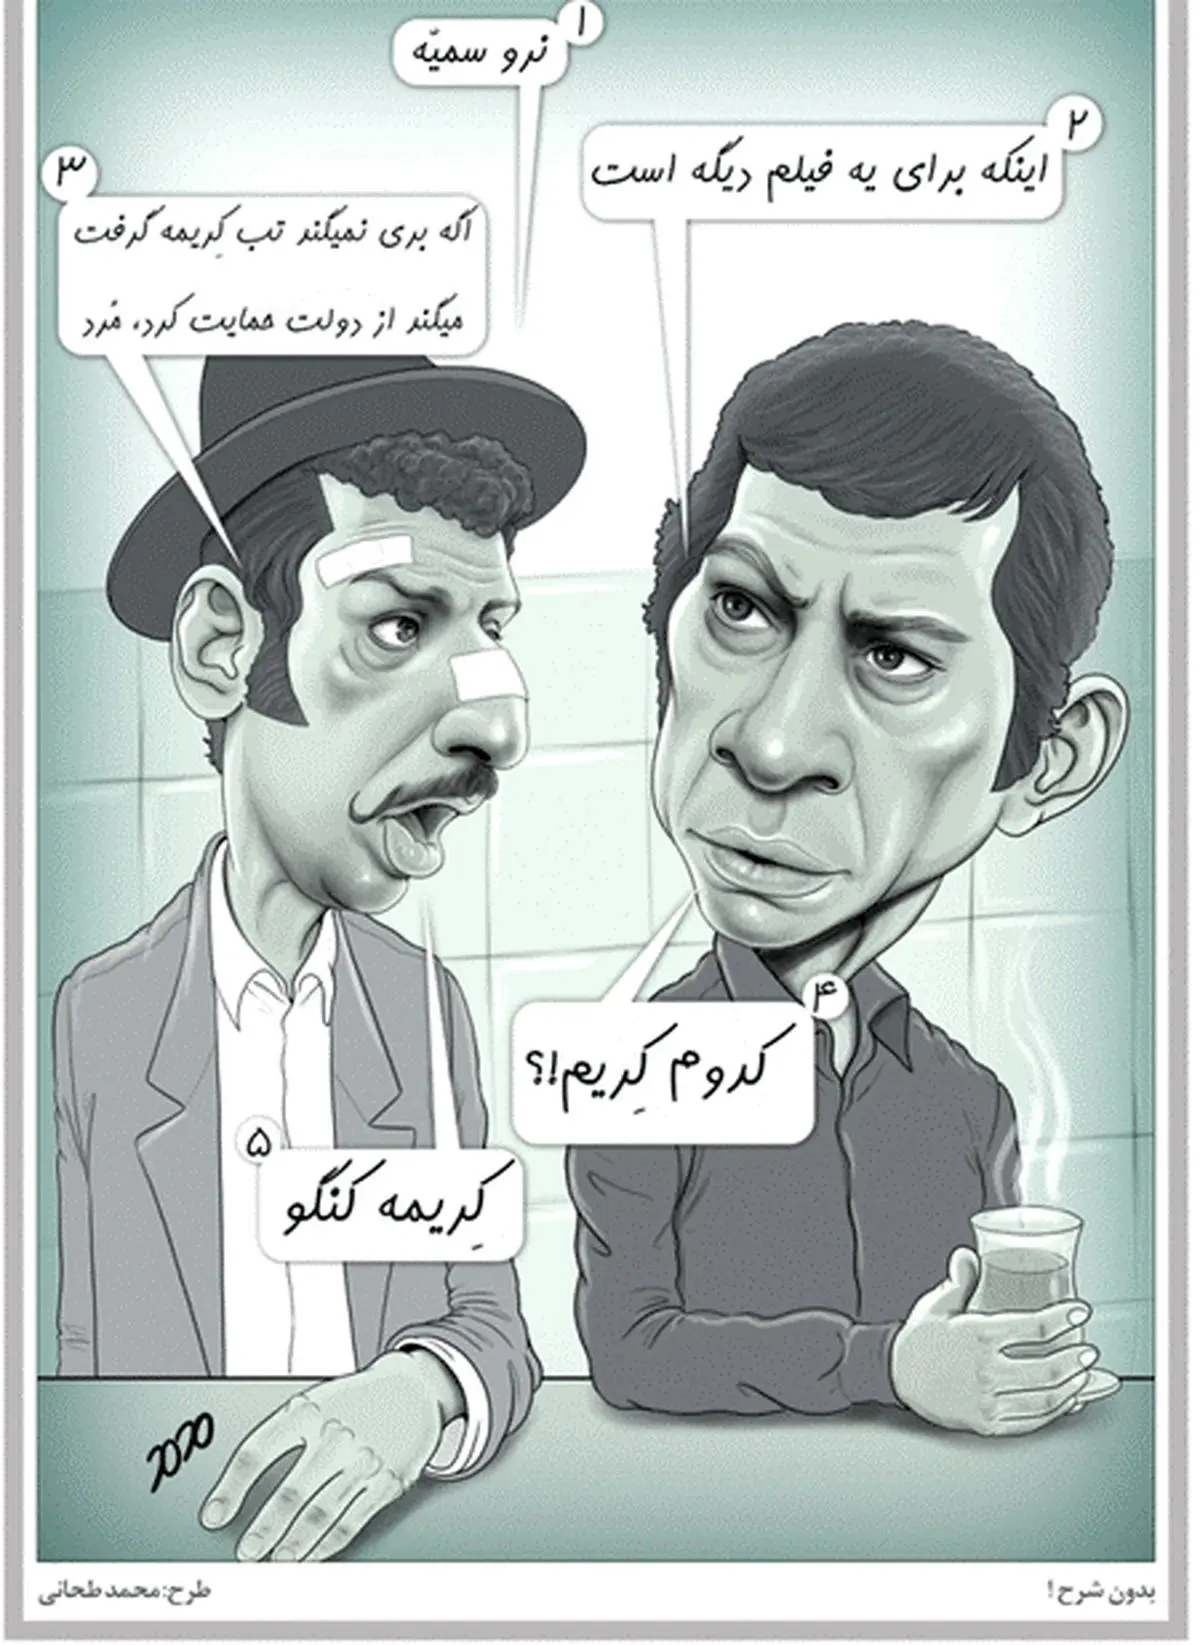 واکنش «بهروز وثوقی» به تب کریمه کنگو! /کاریکاتور